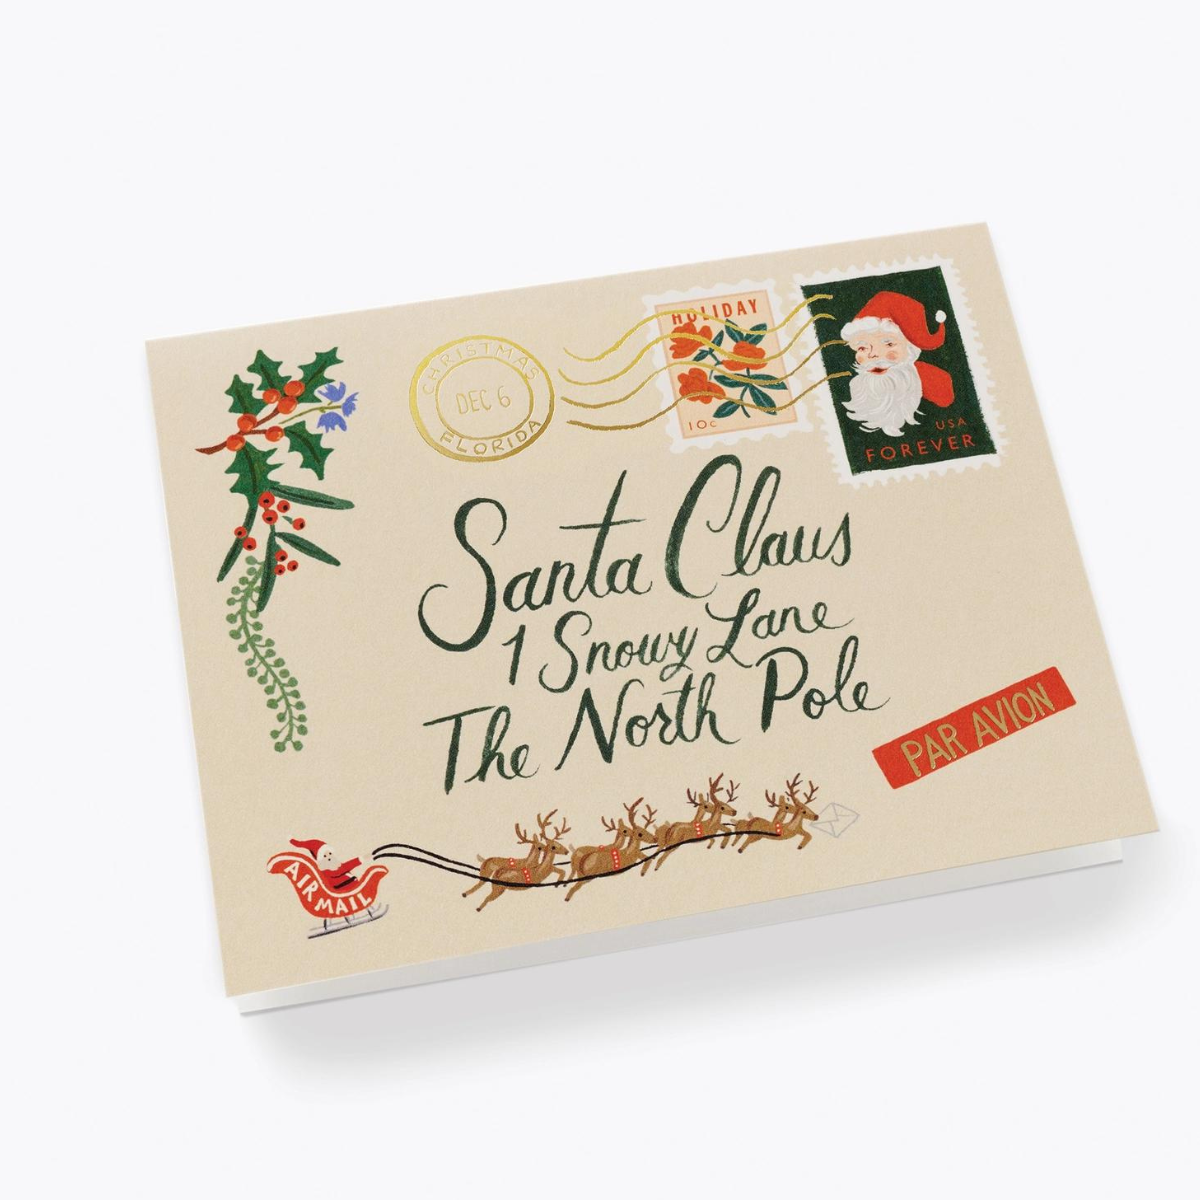 Cette très belle carte conçue comme une enveloppe adressée au Père Noël, ajoute une touche de fantaisie à vos vœux.